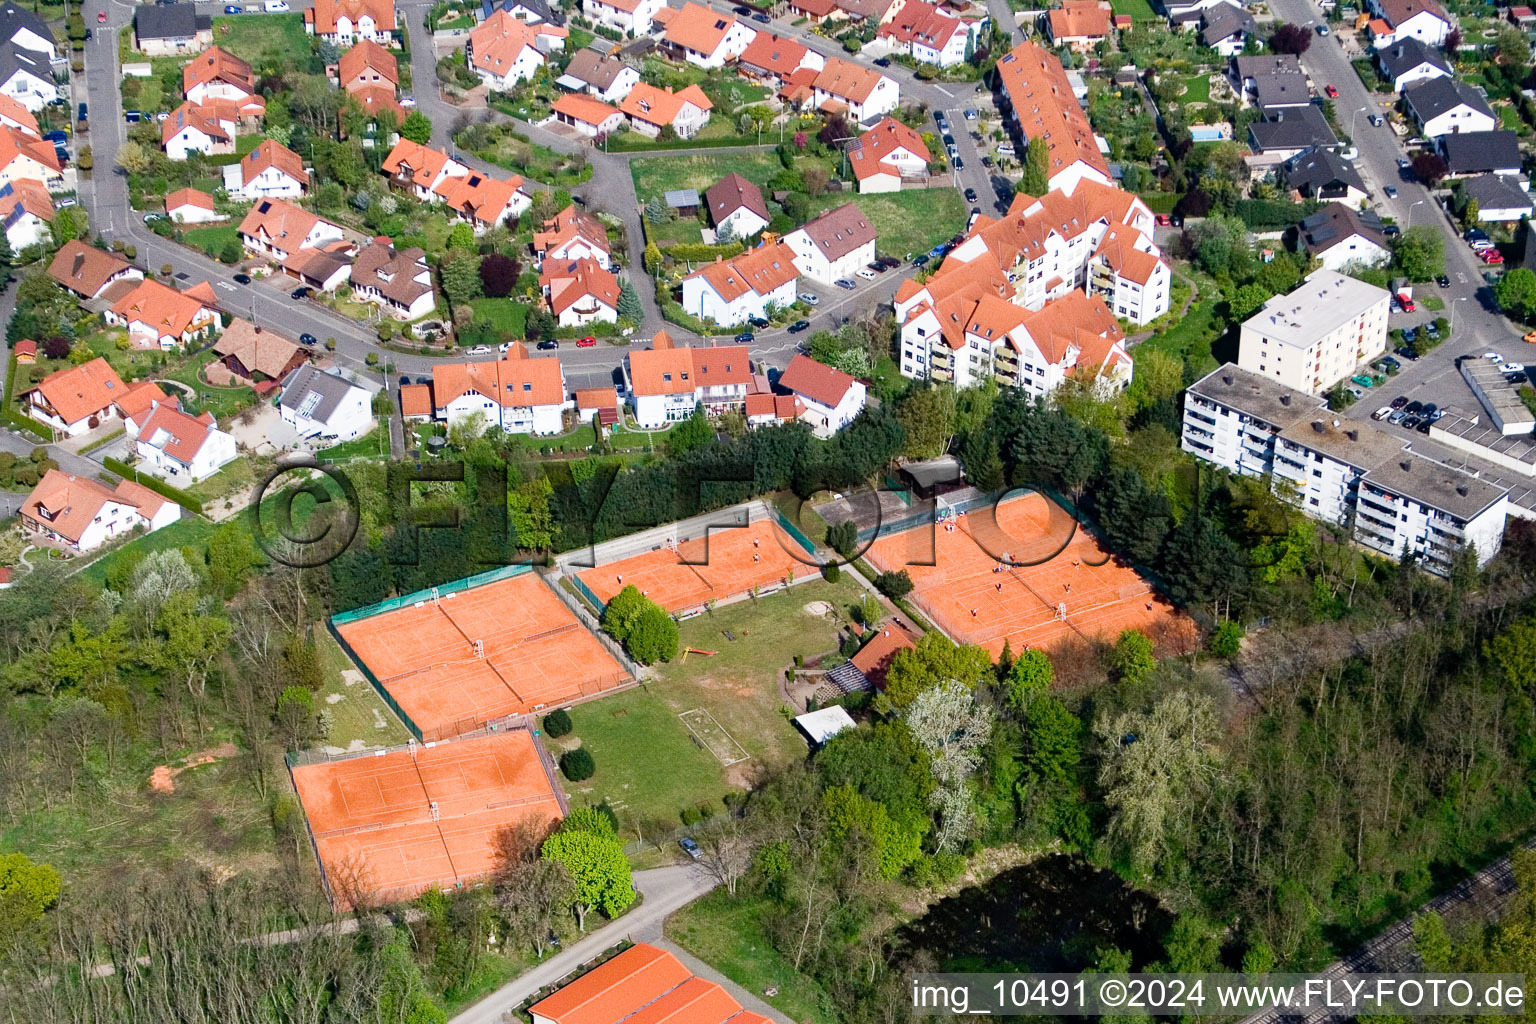 Club de tennis à Jockgrim dans le département Rhénanie-Palatinat, Allemagne vue d'en haut